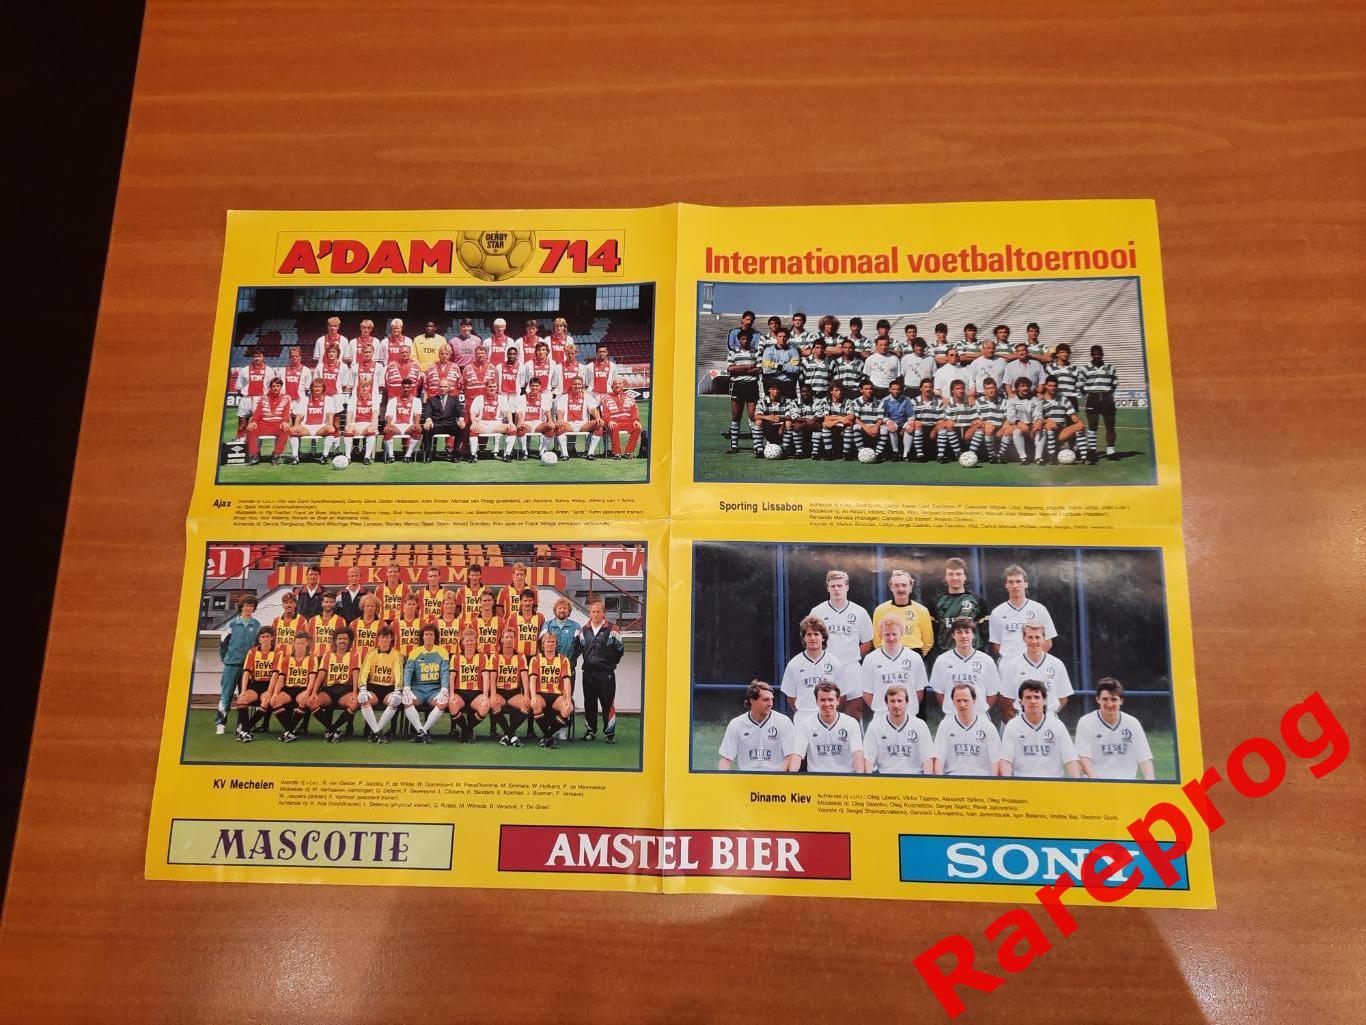 турнир Adam 1989 Нидерланды - Динамо Киев Спортинг Аякс Мехелен + постер 1